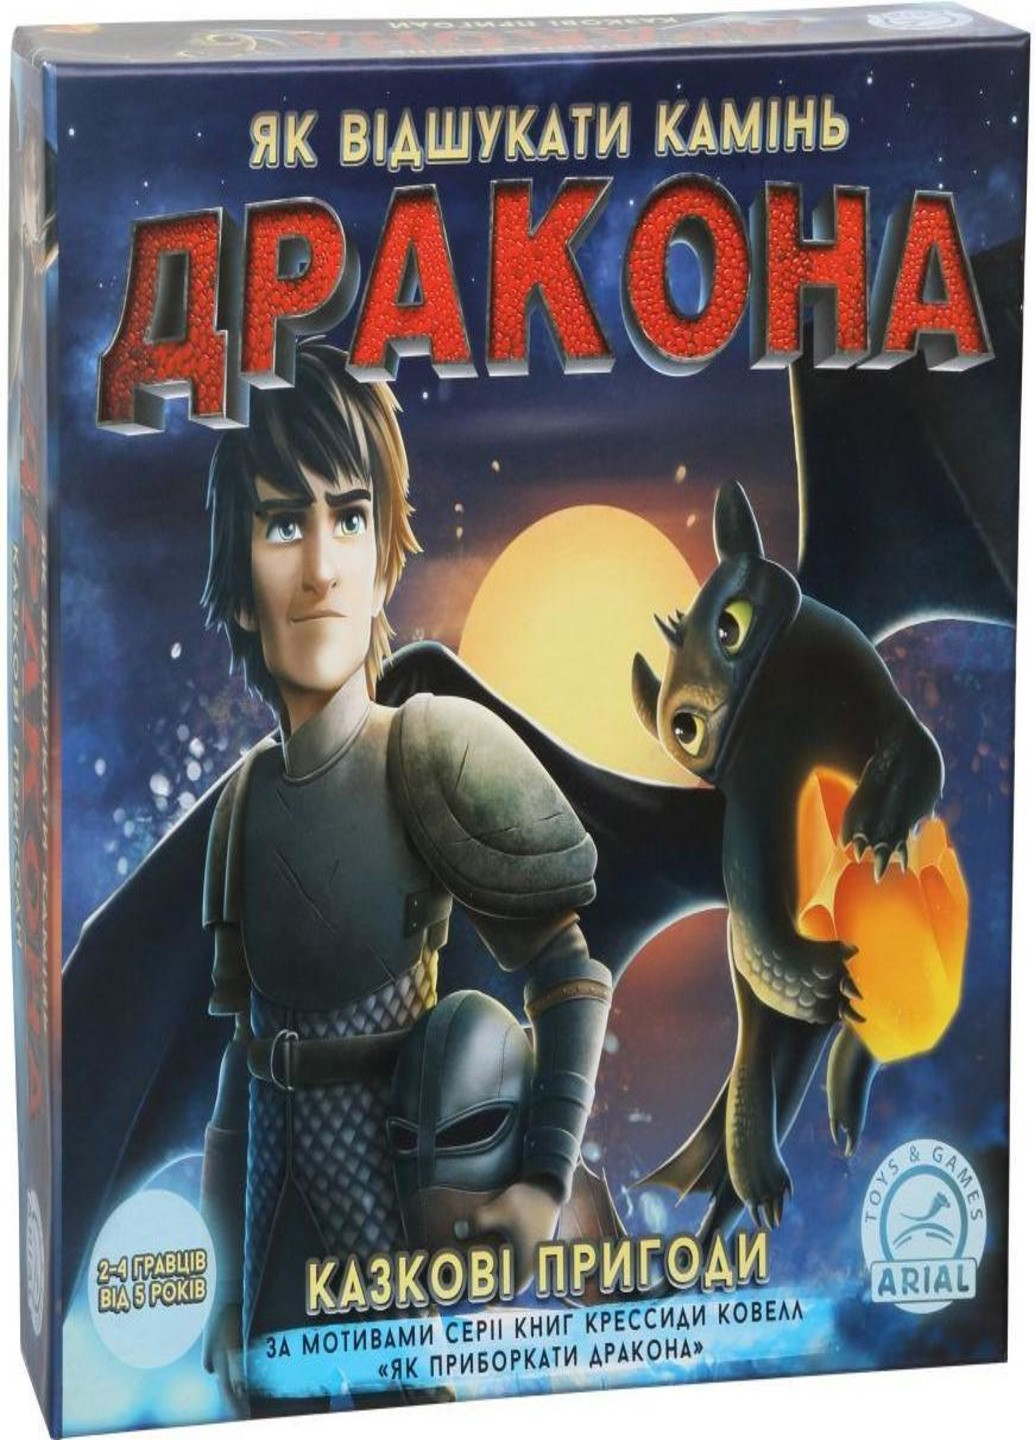 Настольная развлекательная игра "сказочные приключения" на украинском языке (89445744-В) Francesco Marconi (232282298)